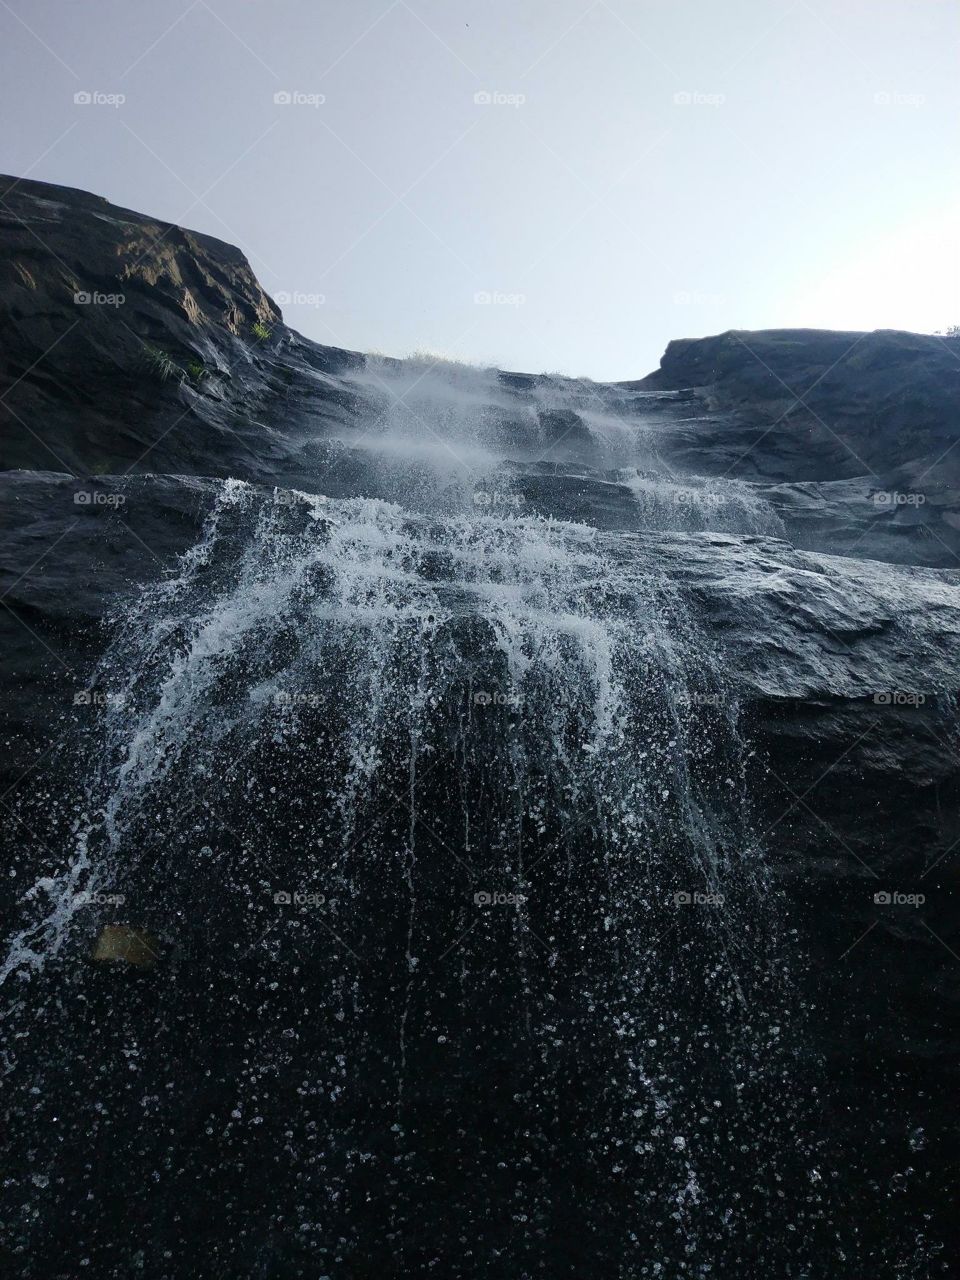 Water falls 